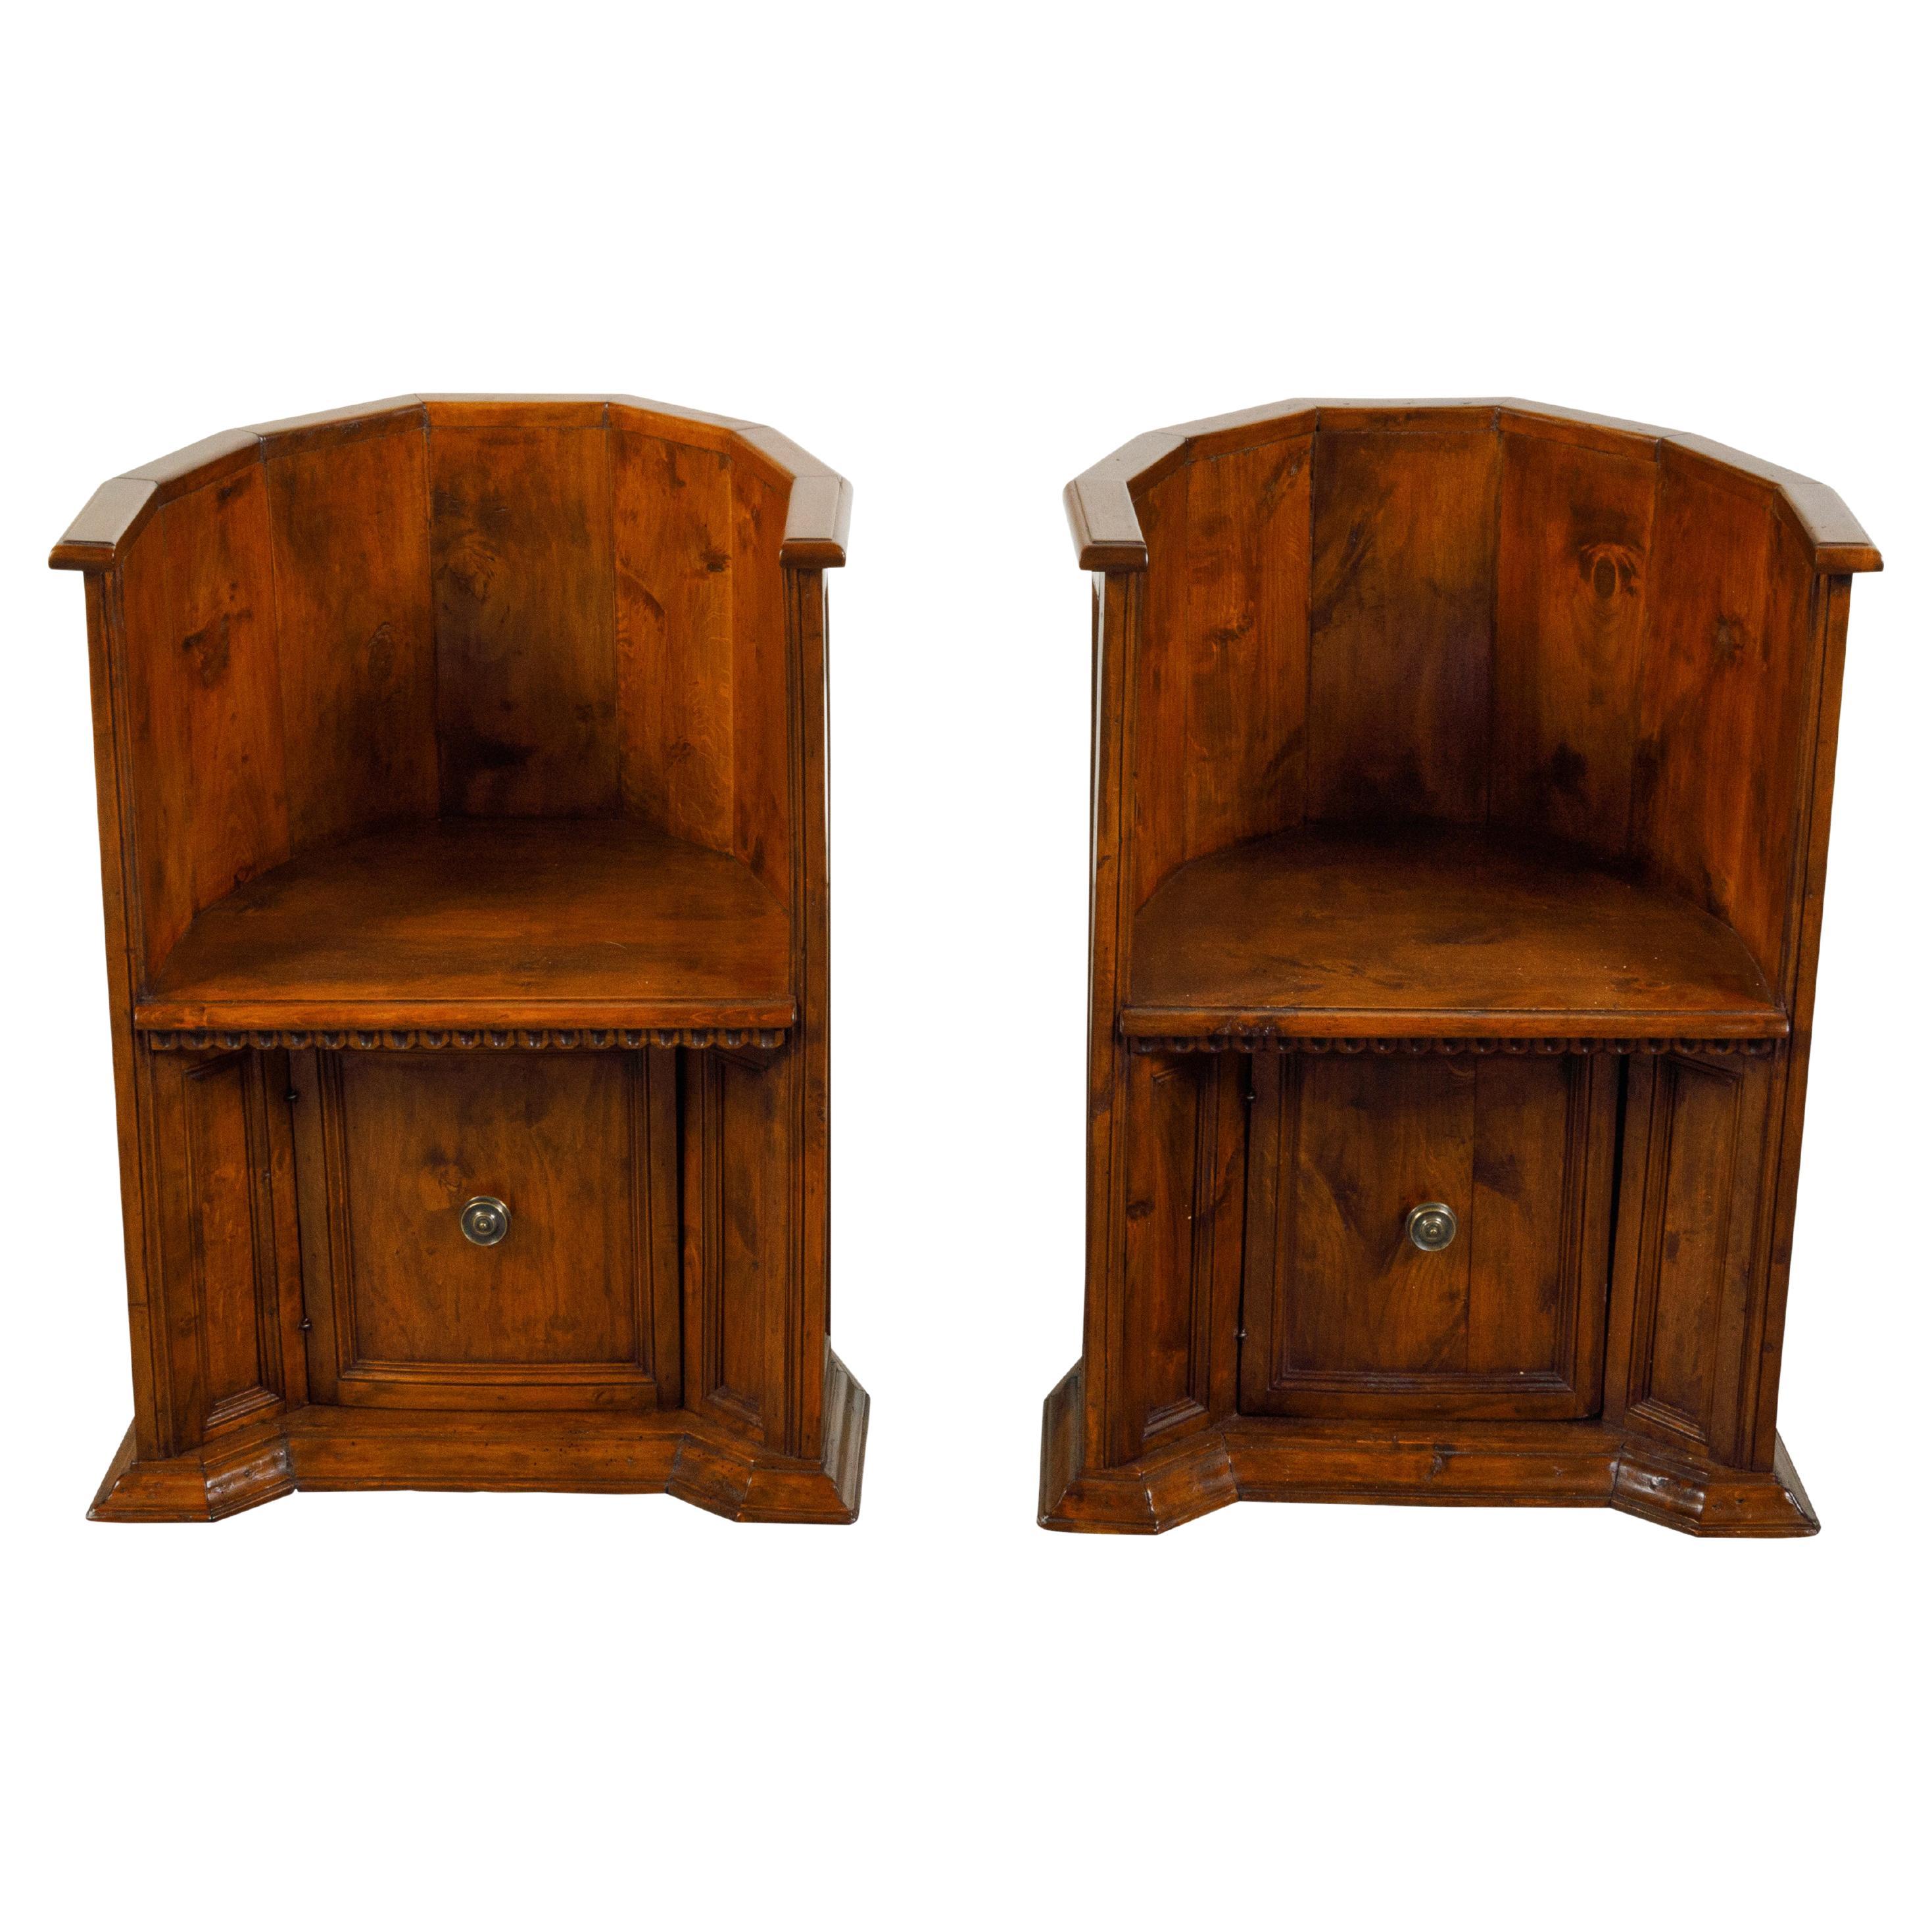 Paire de chaises italiennes en bois de style Renaissance du 19ème siècle avec portes basses